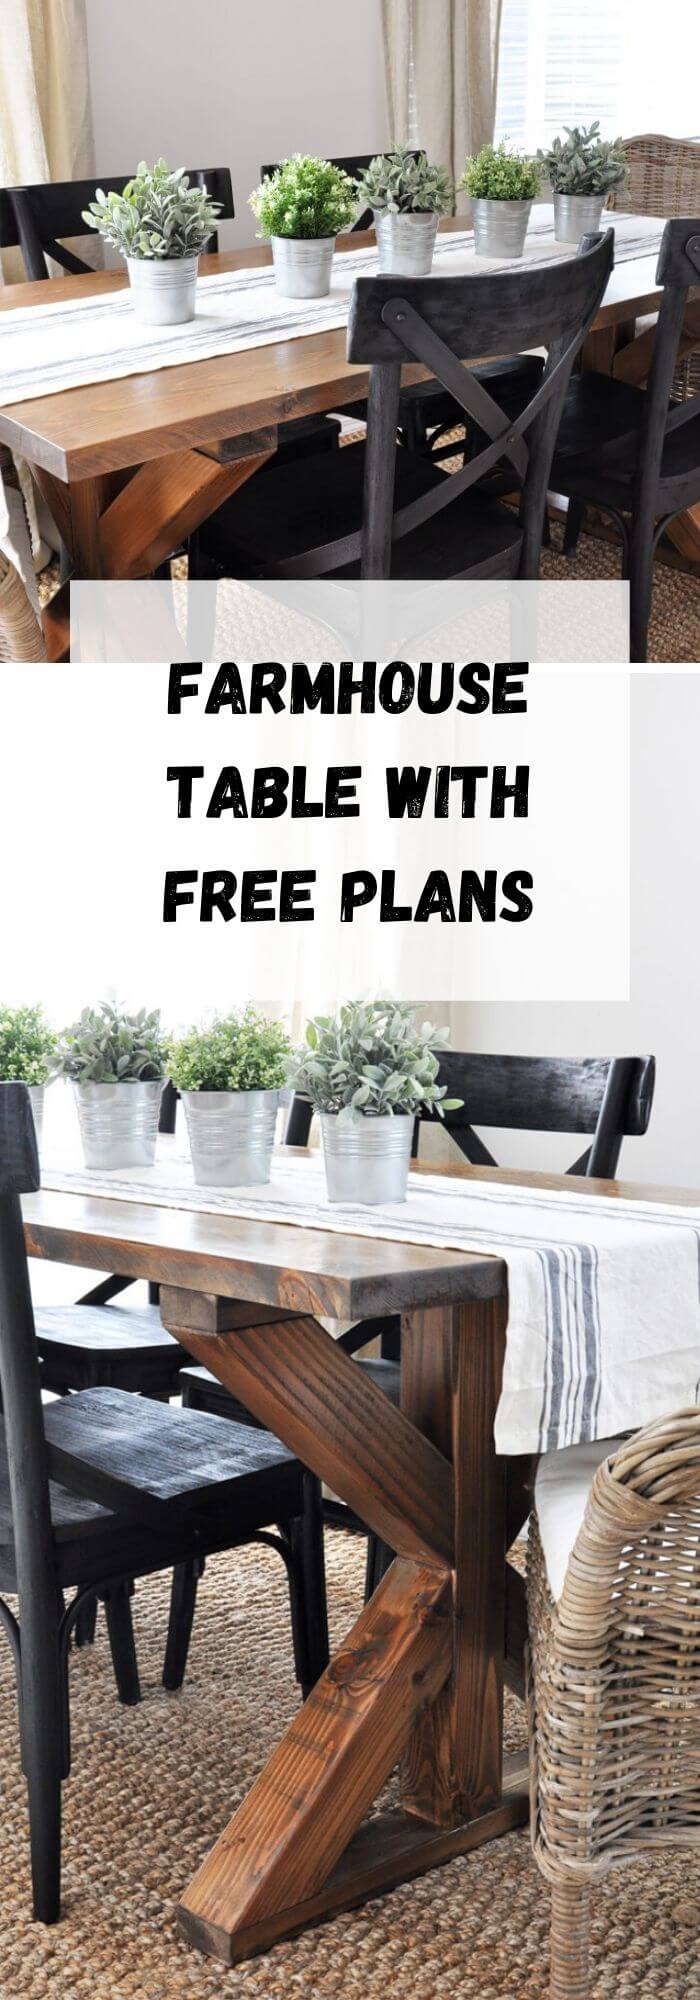 15 farmhouse table ideas